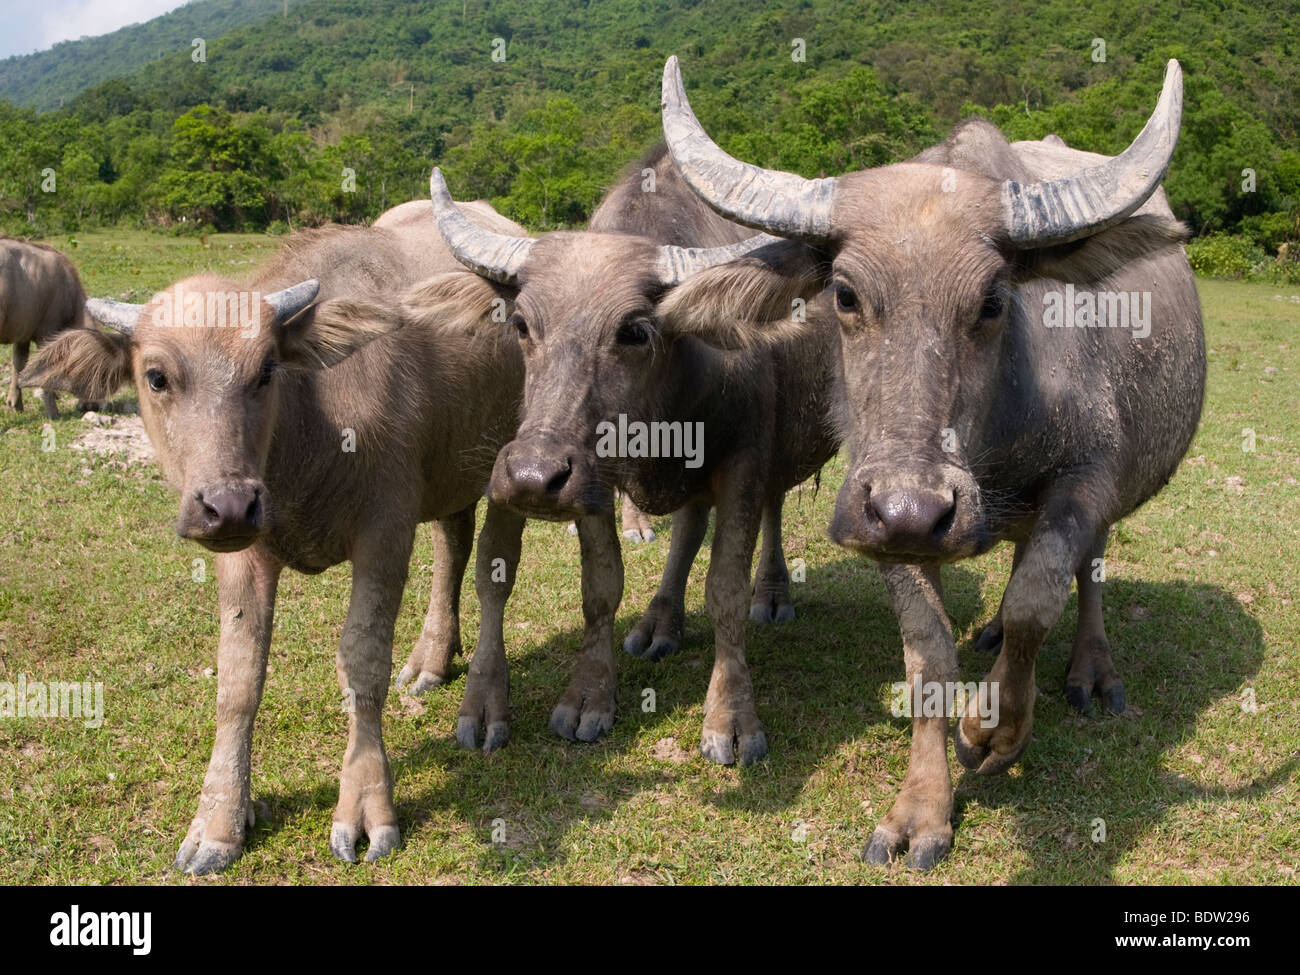 Un troupeau de buffles d'eau sauvages à Pui O l'île de Lantau à Hong Kong. Banque D'Images